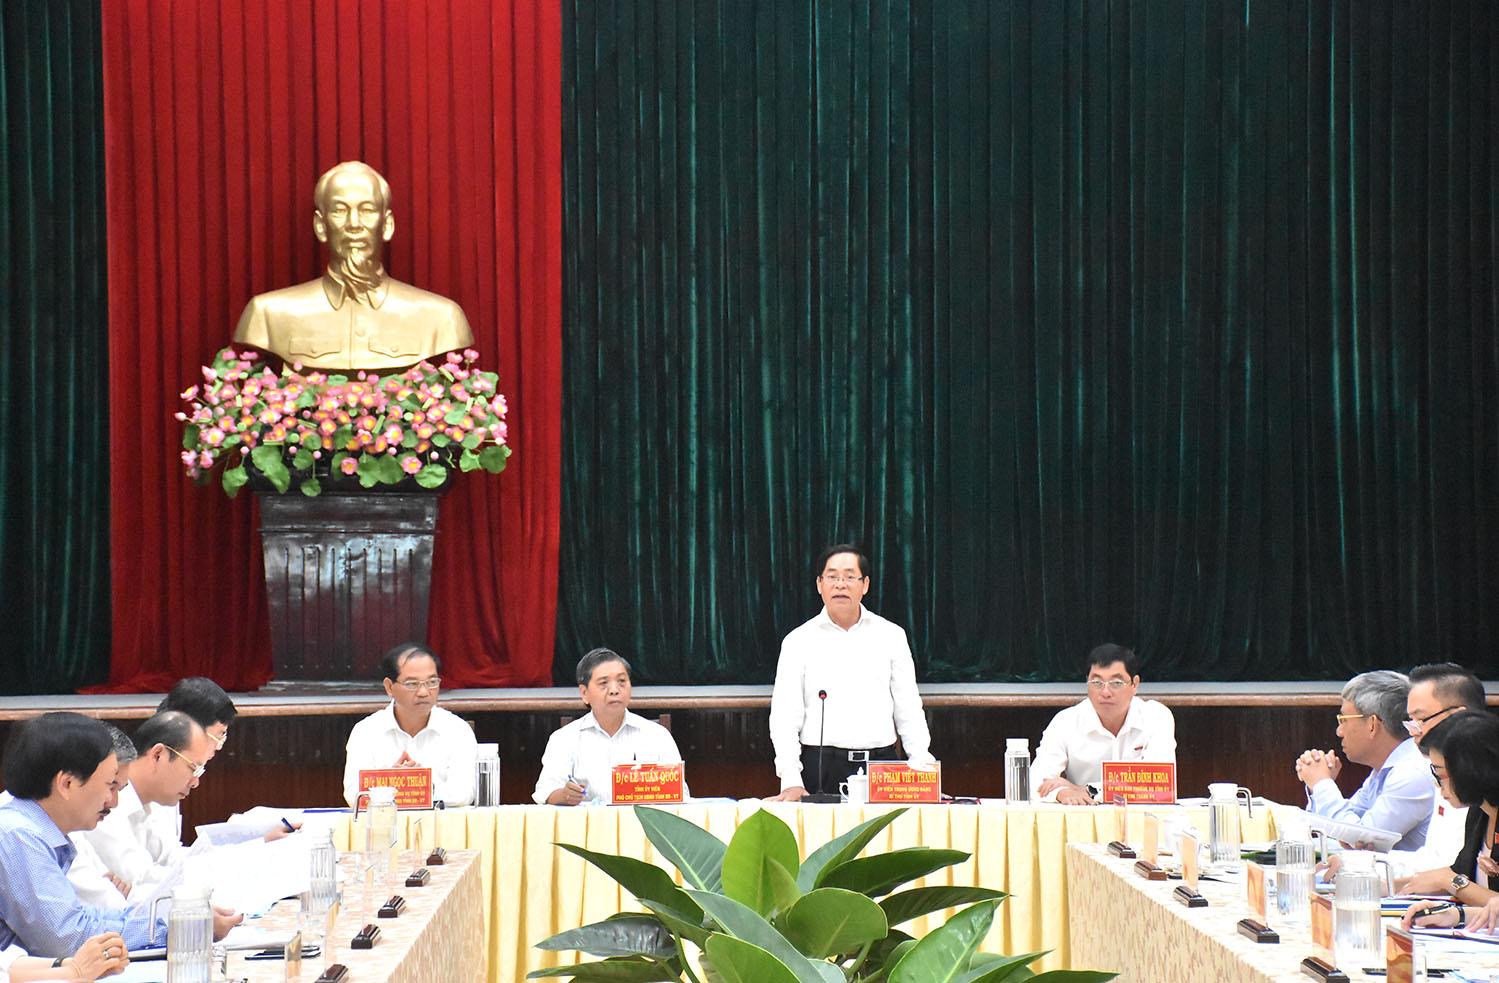 Ông Phạm Viết Thanh, Ủy viên Trung ương Đảng, Bí thư Tỉnh ủy, phát biểu chỉ đạo tại buổi làm việc với Ban Thường vụ Thành ủy Vũng Tàu mở rộng.